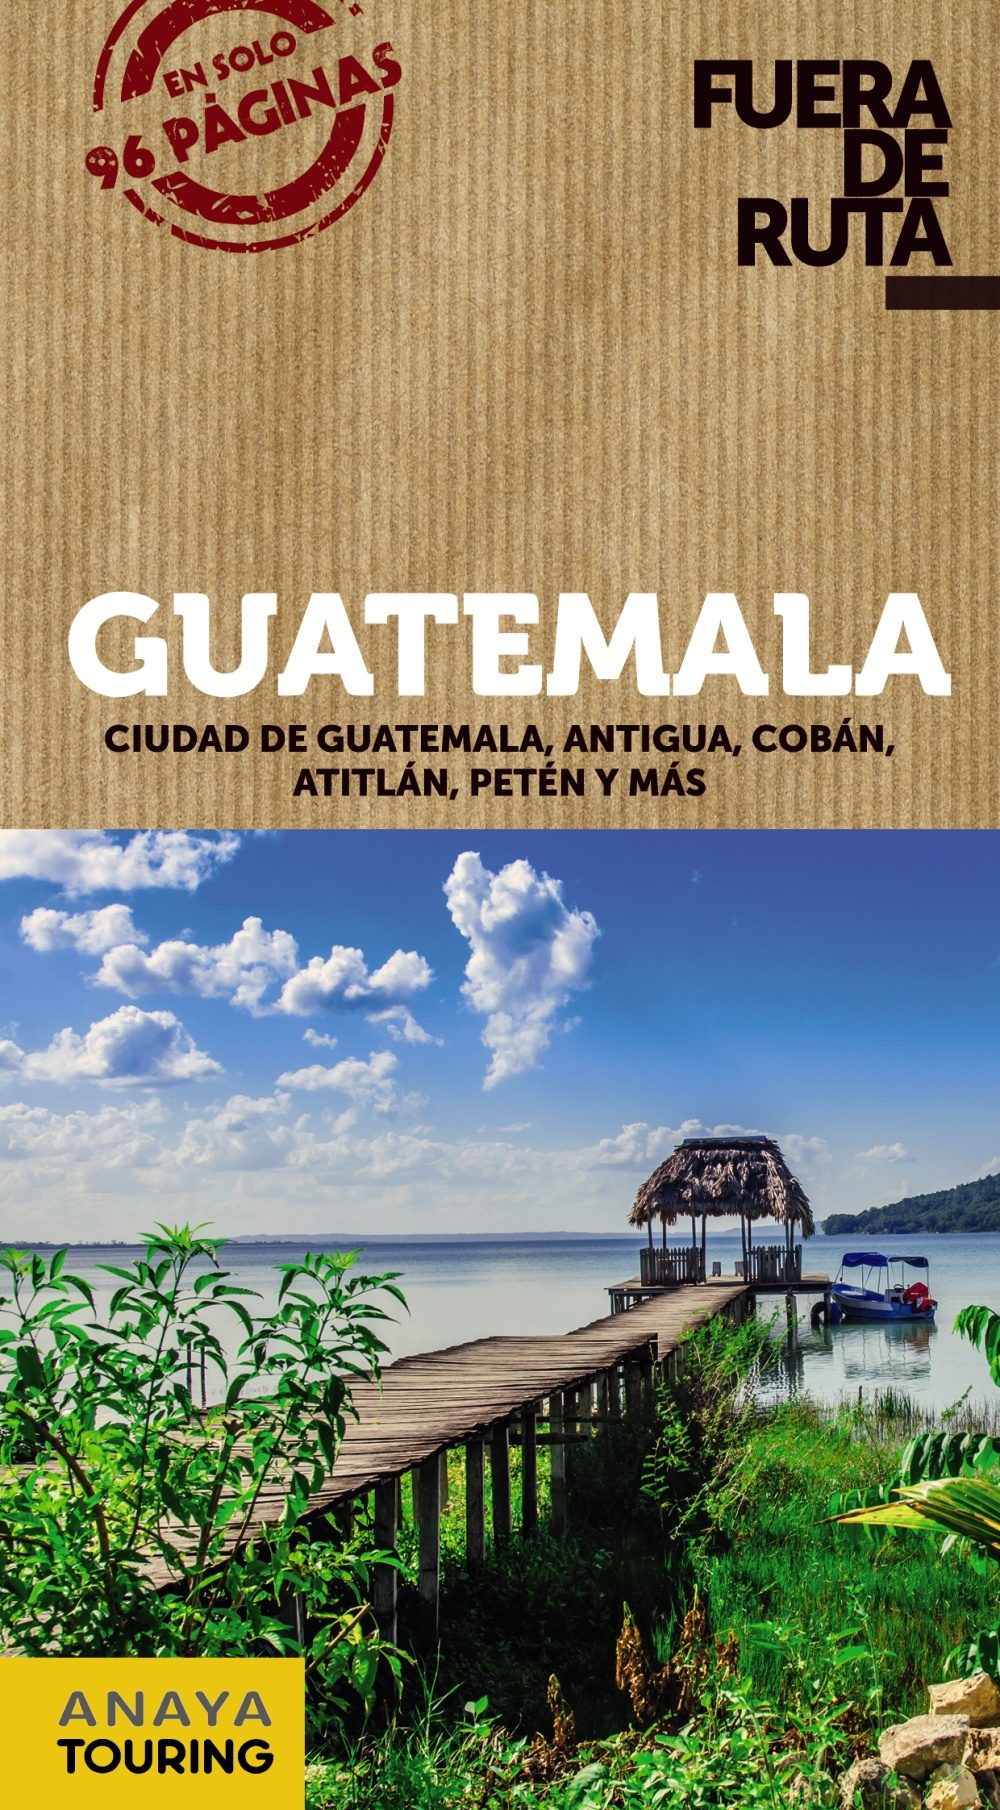 Guatemala (Fuera de ruta)